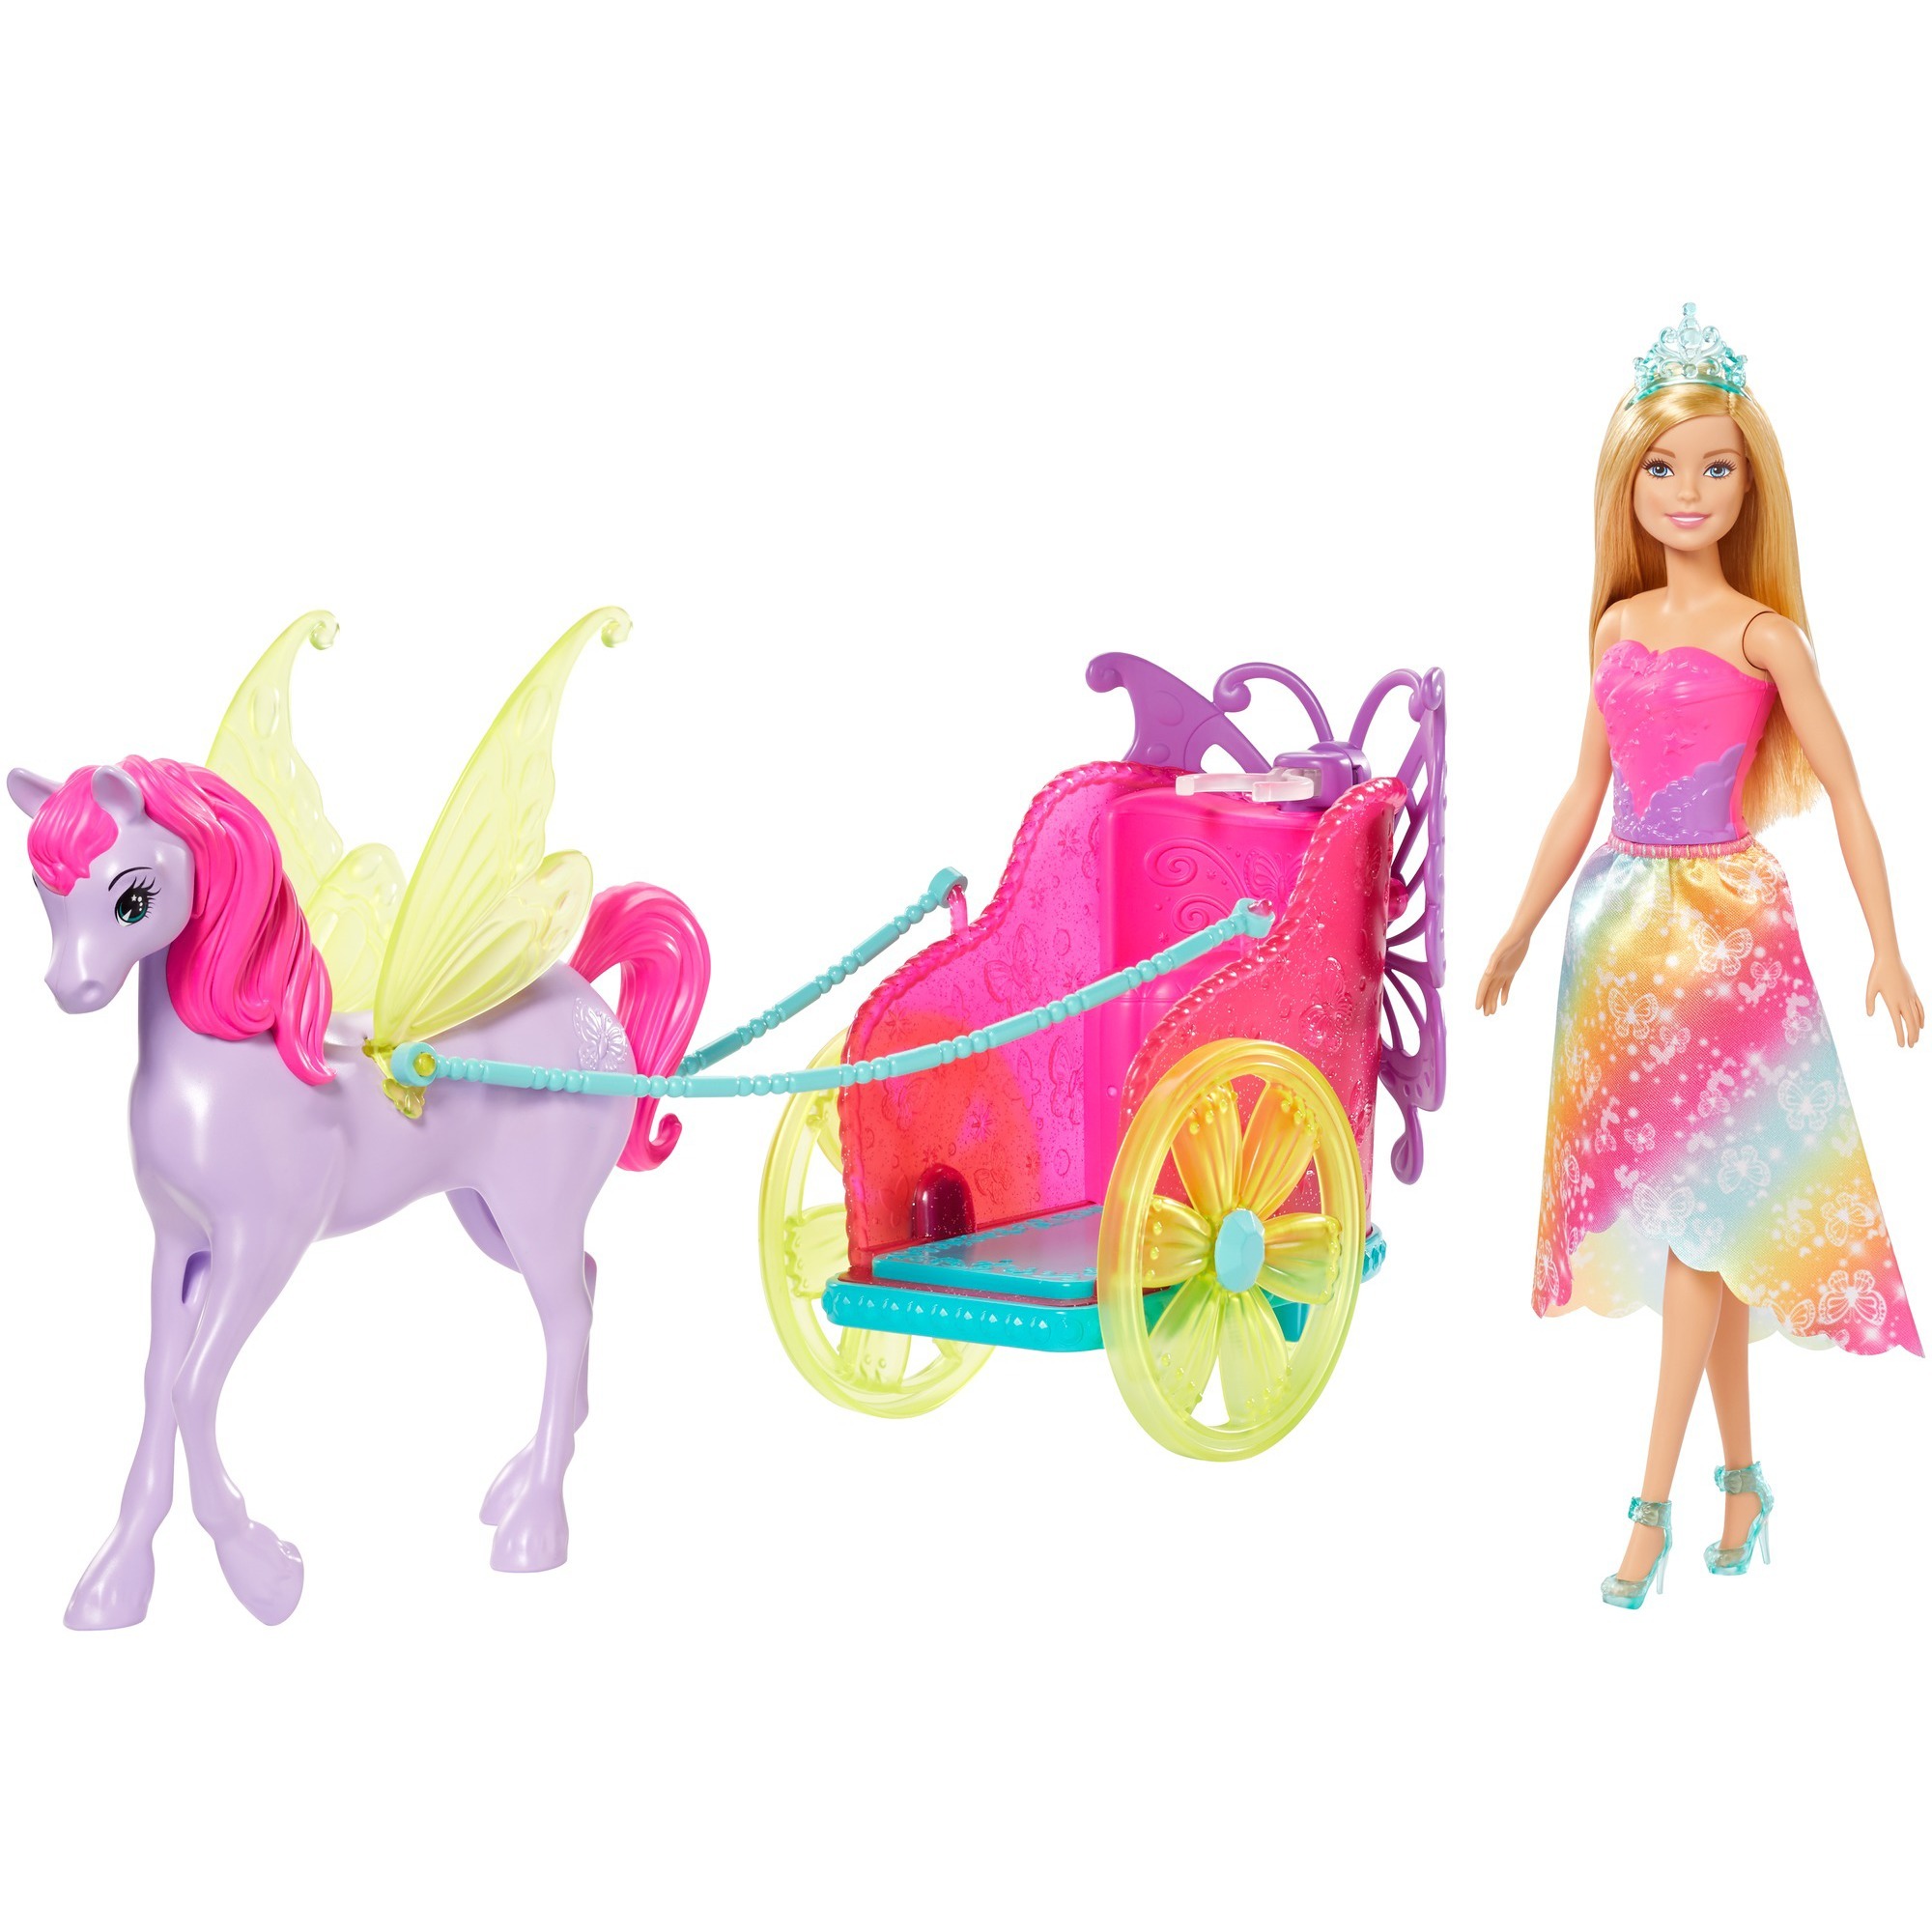 Image of Alternate - Barbie Dreamtopia Prinzessin Puppe, Pegasus und Kutsche online einkaufen bei Alternate